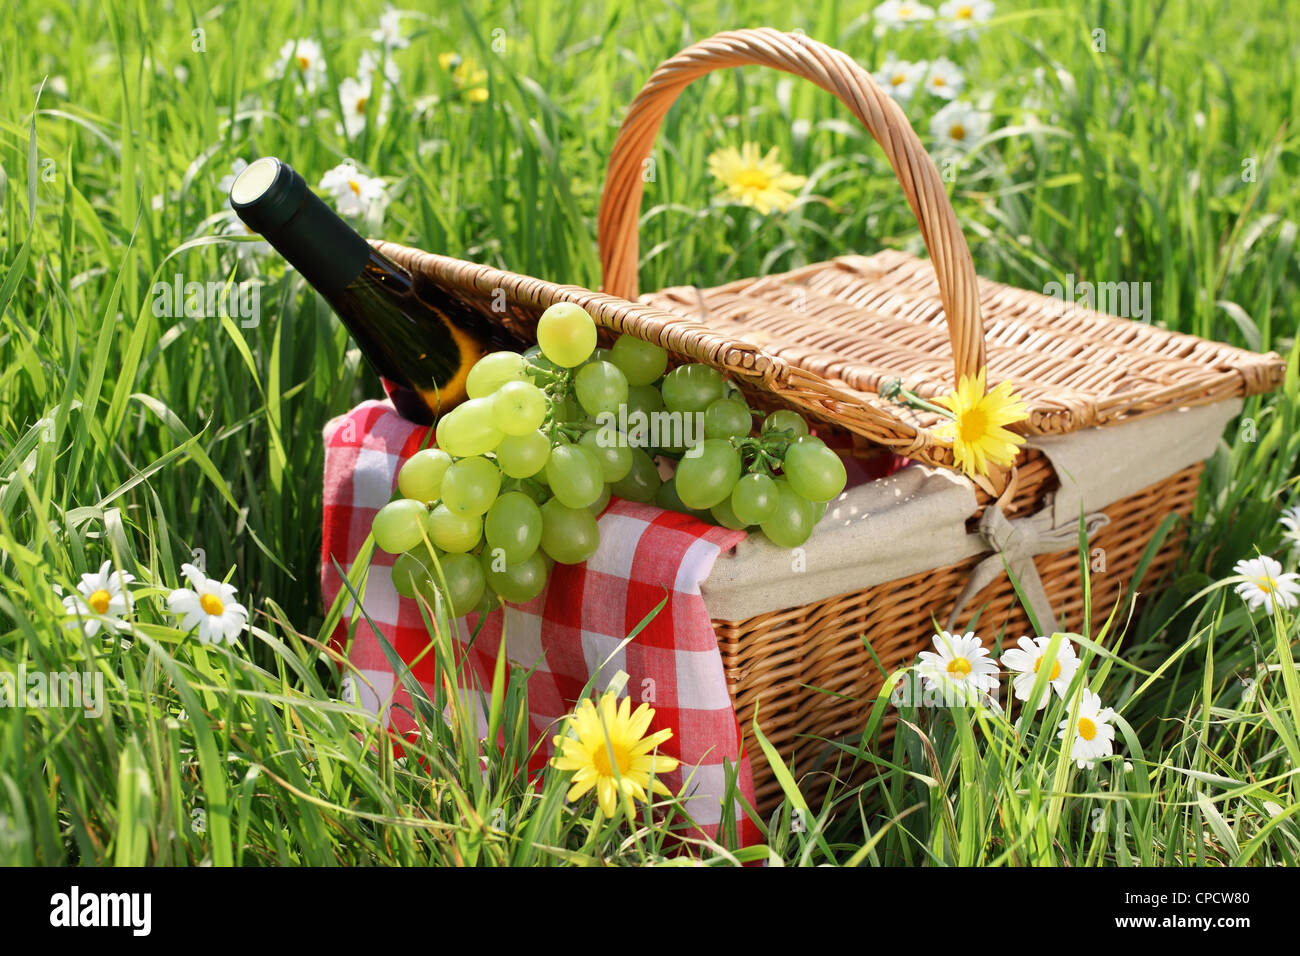 Impostazione di picnic sul prato verde Foto Stock